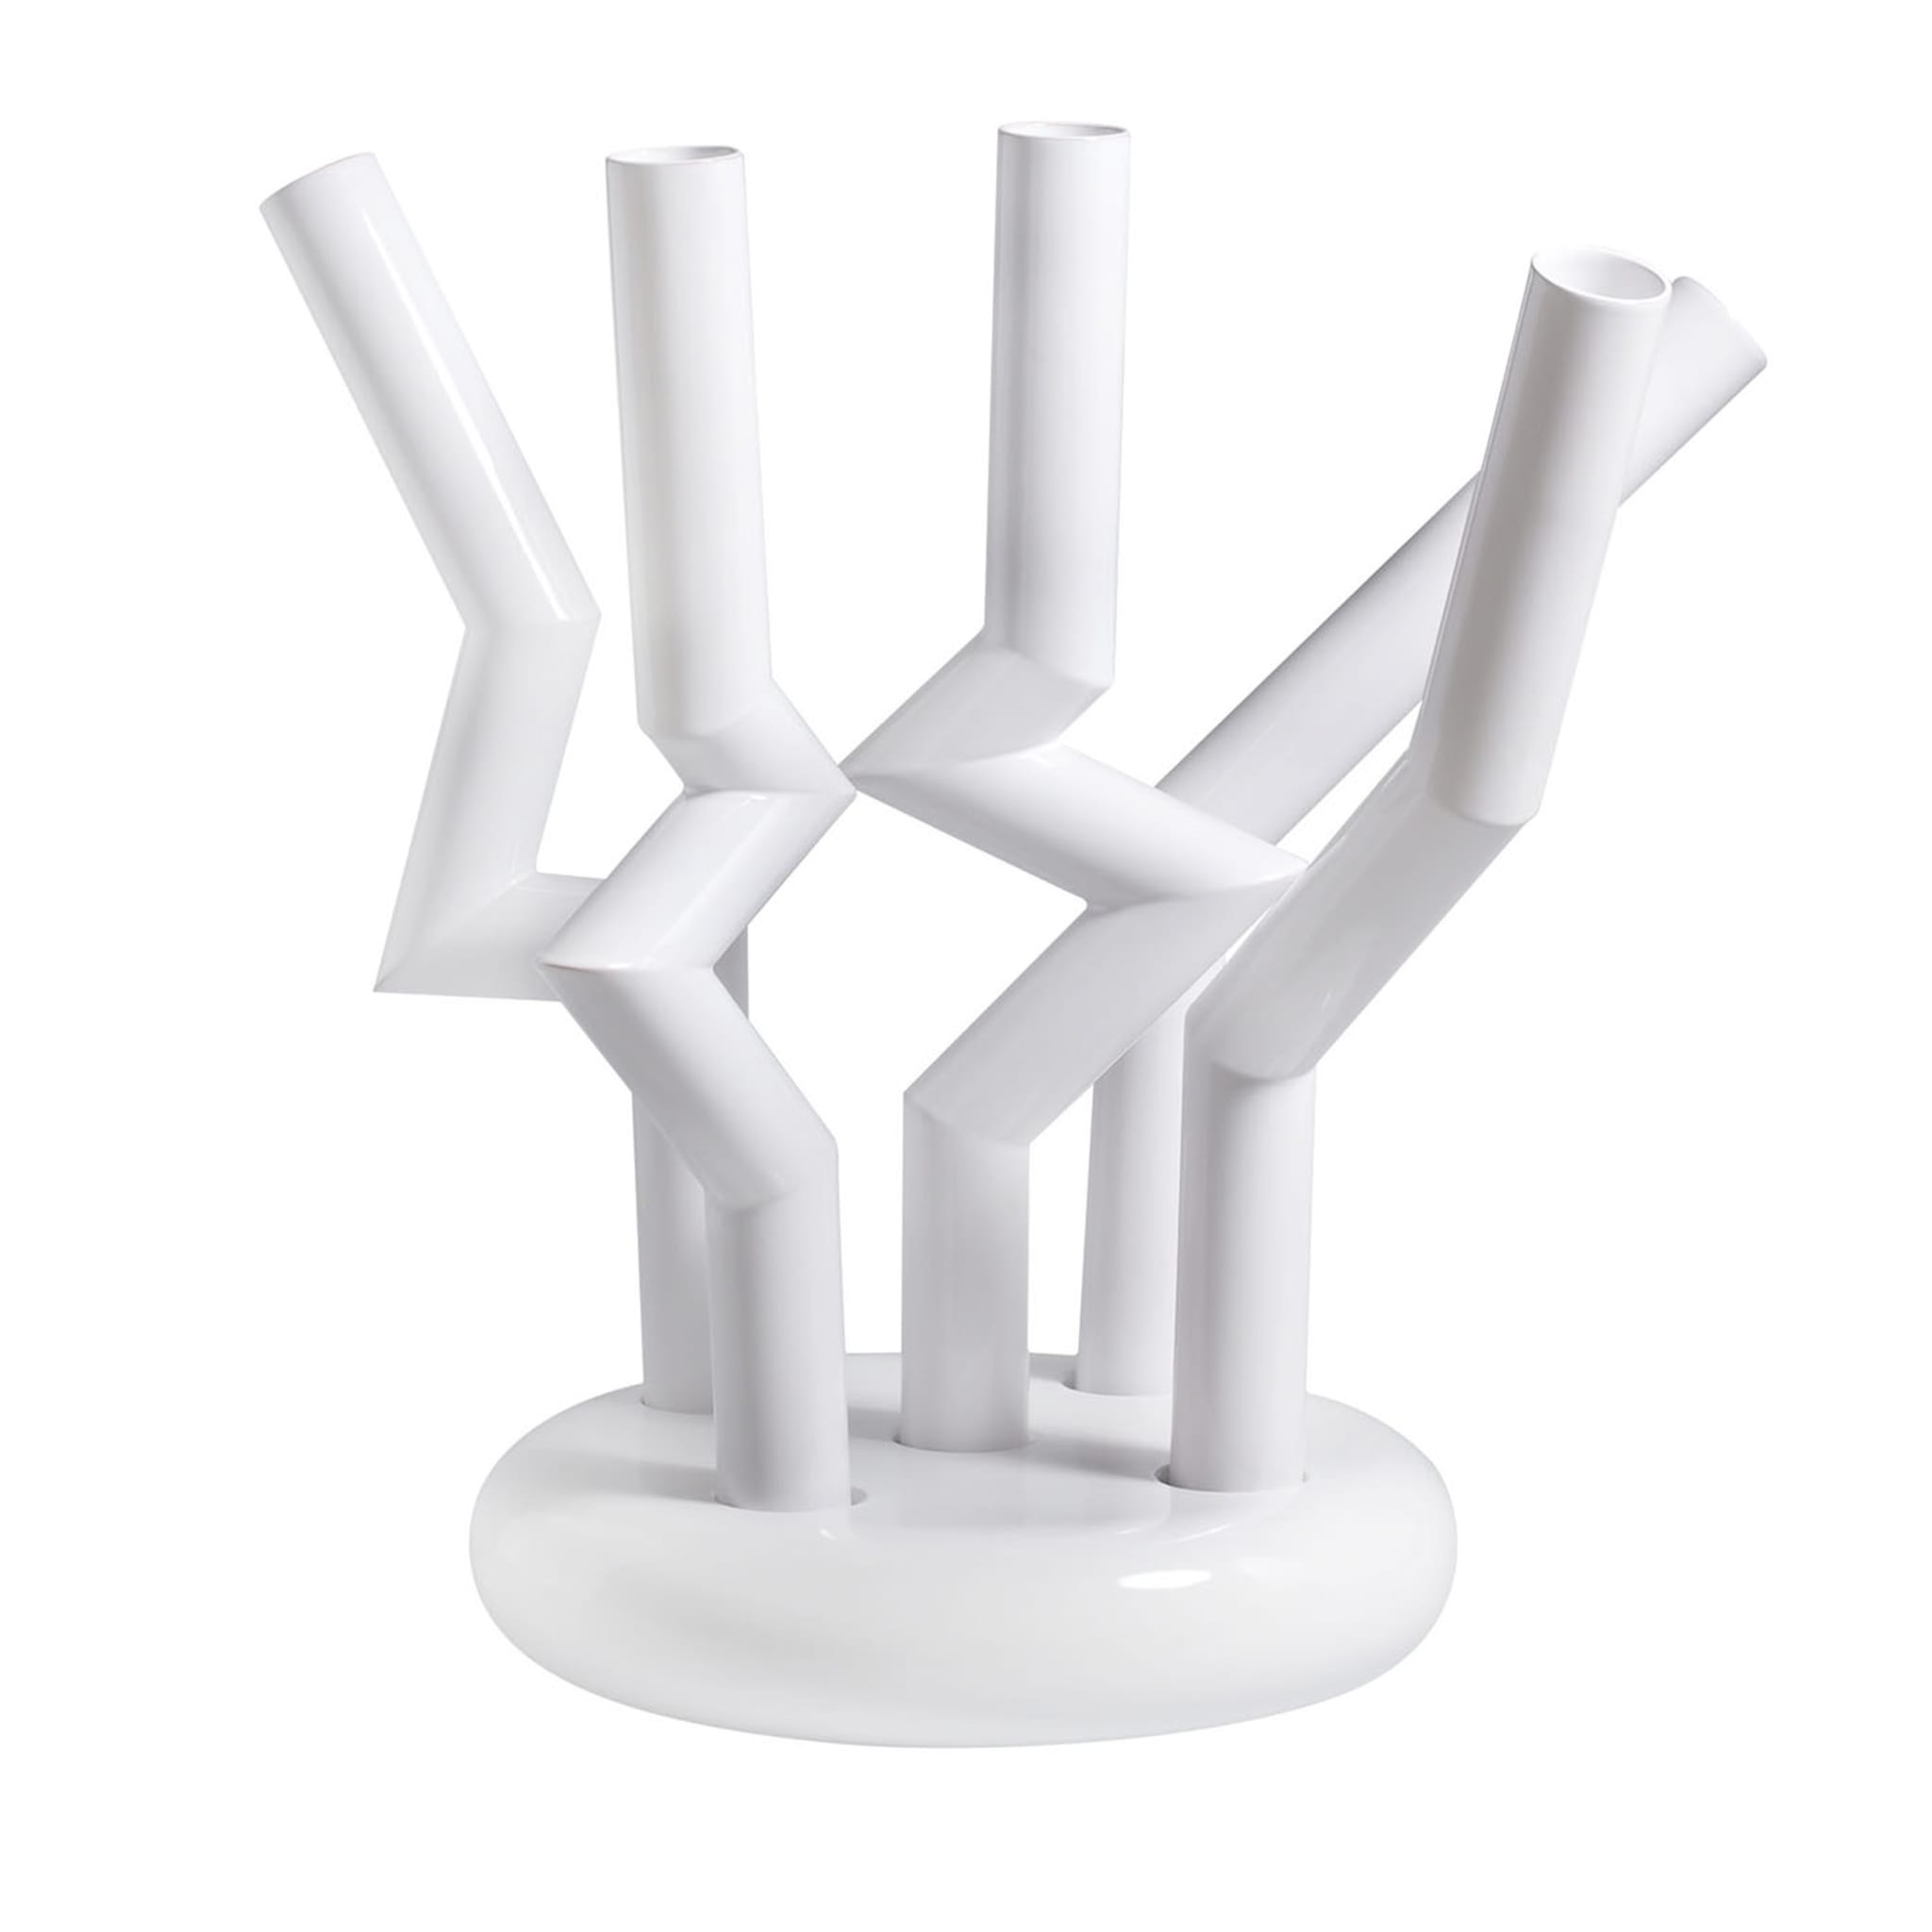 Periferie - 2021 White Vase by Ennio Nonni - Main view